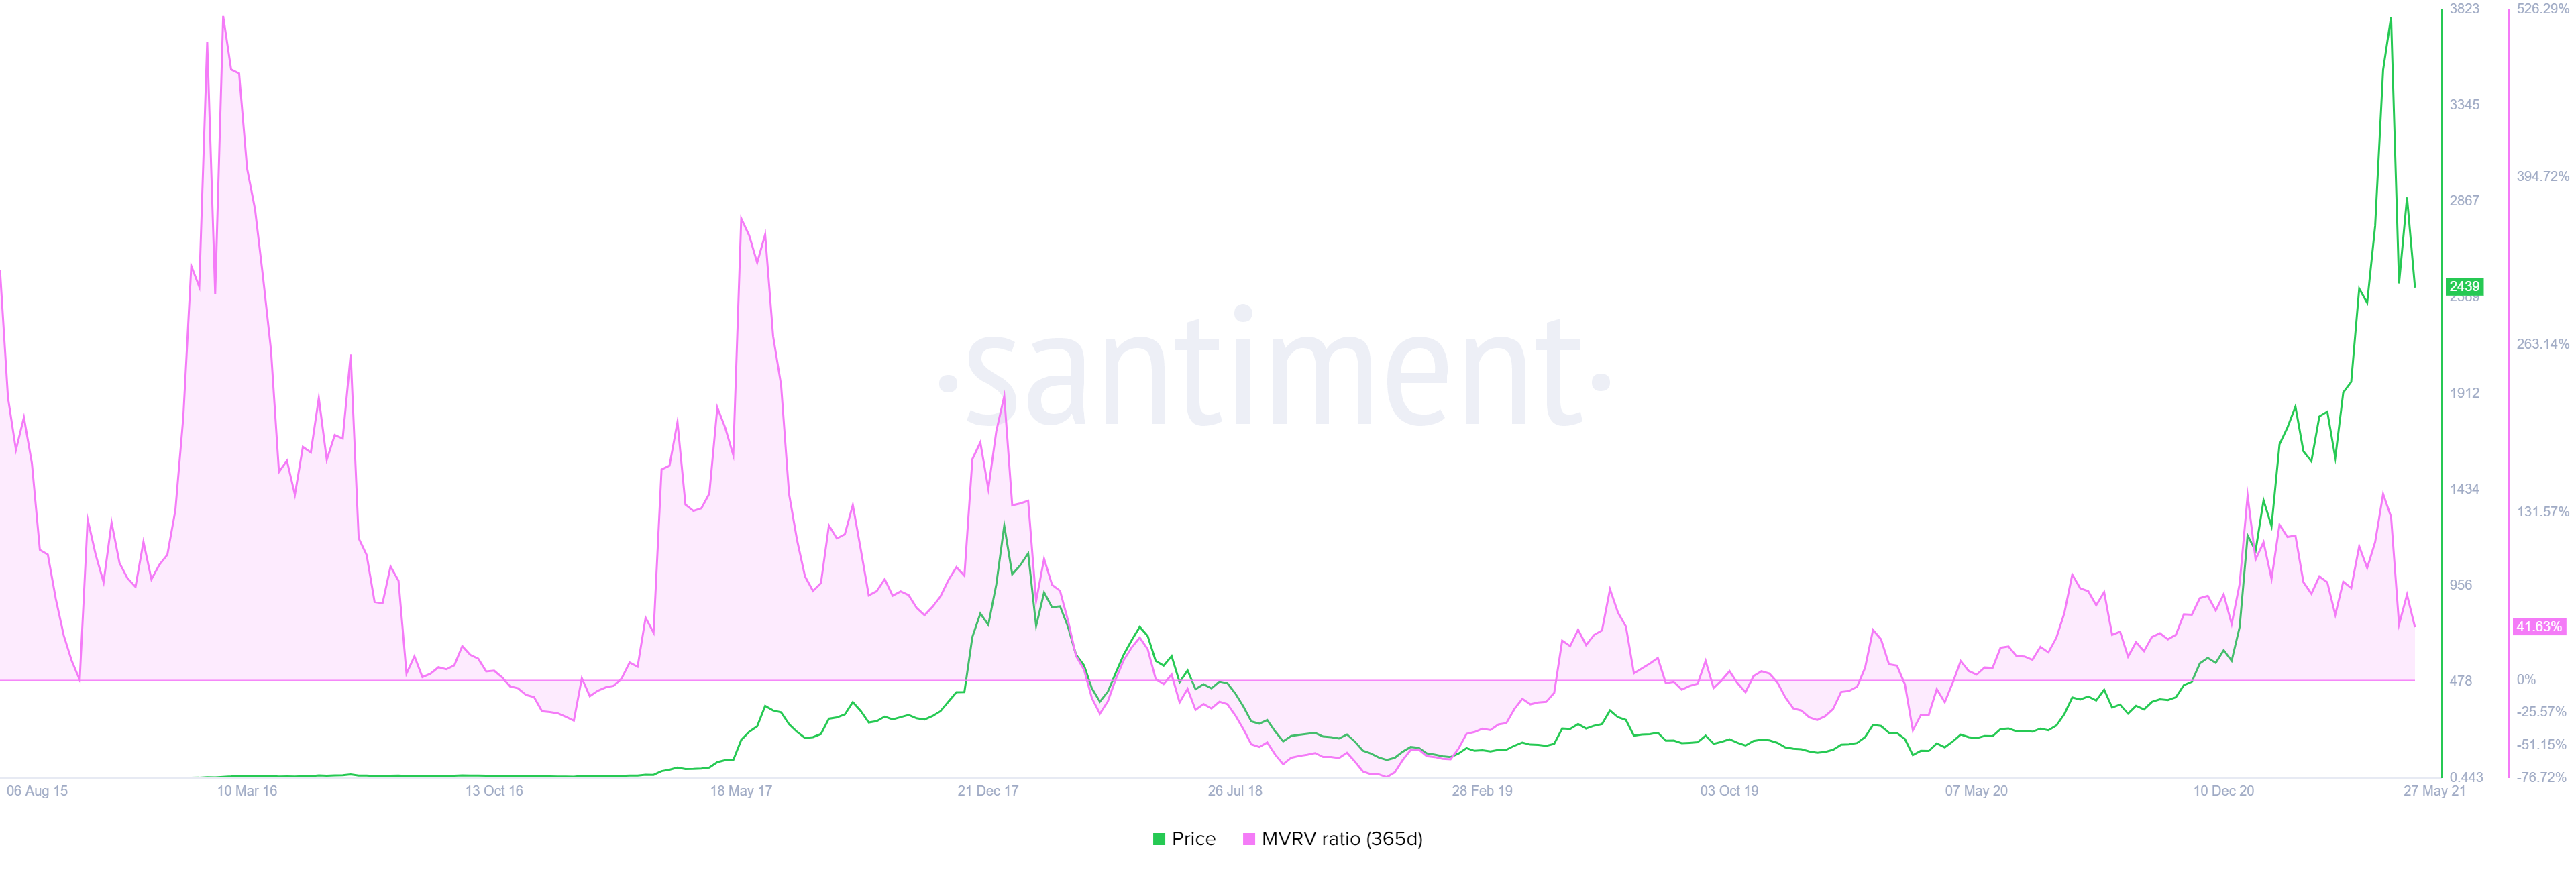 3 chất xúc tác tăng giá tiềm năng cho Ethereum vào tháng 6